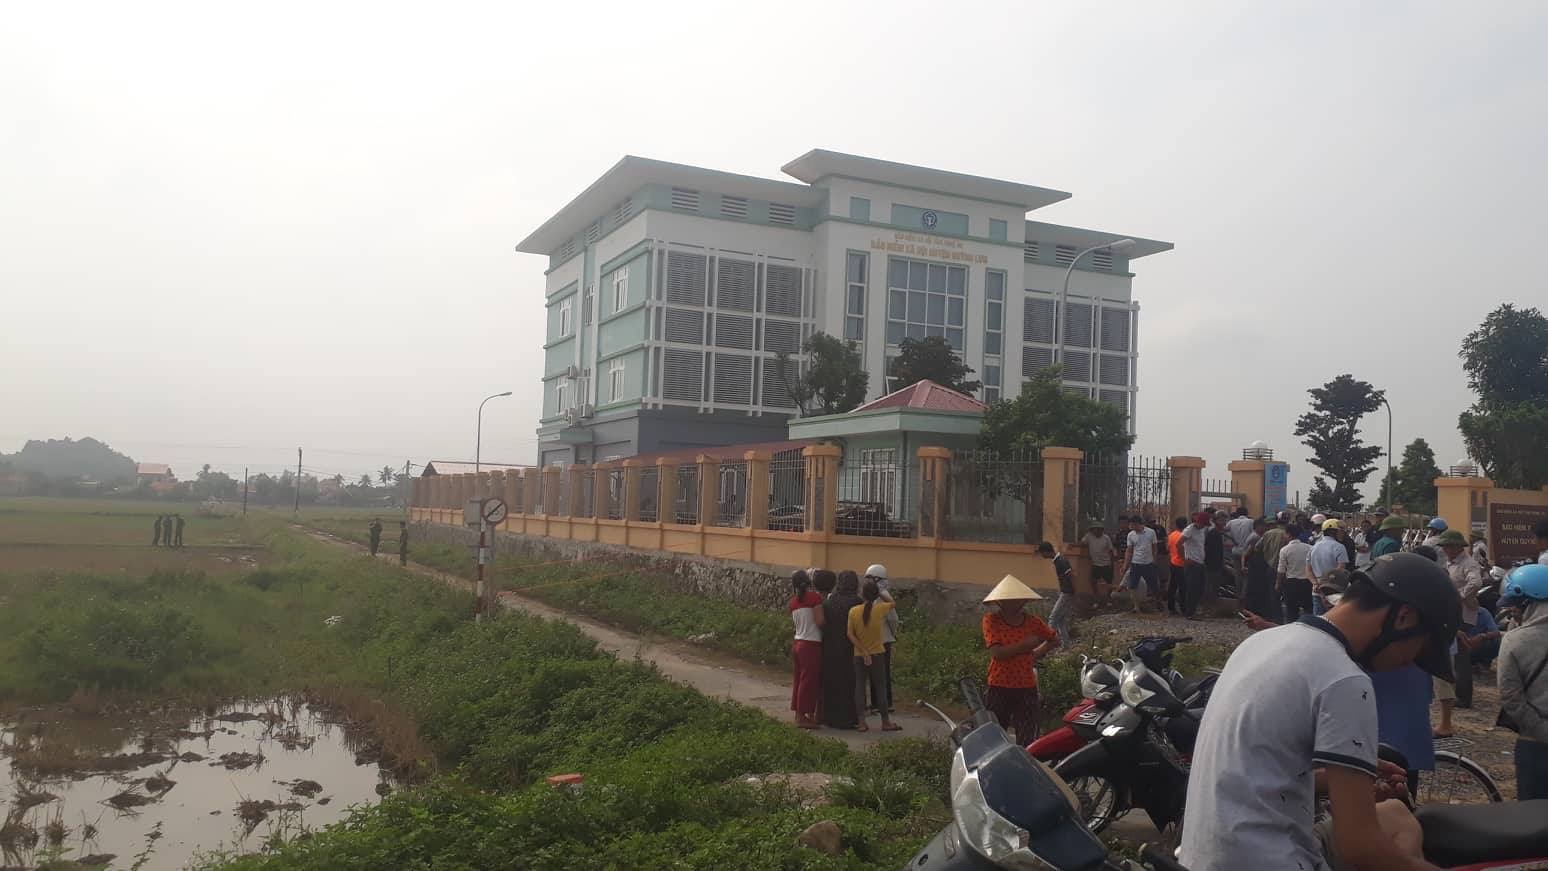 Khu vực Bảo hiểm xã hội huyện Quỳnh Lưu nơi phát hiện thi thể ông Thành.